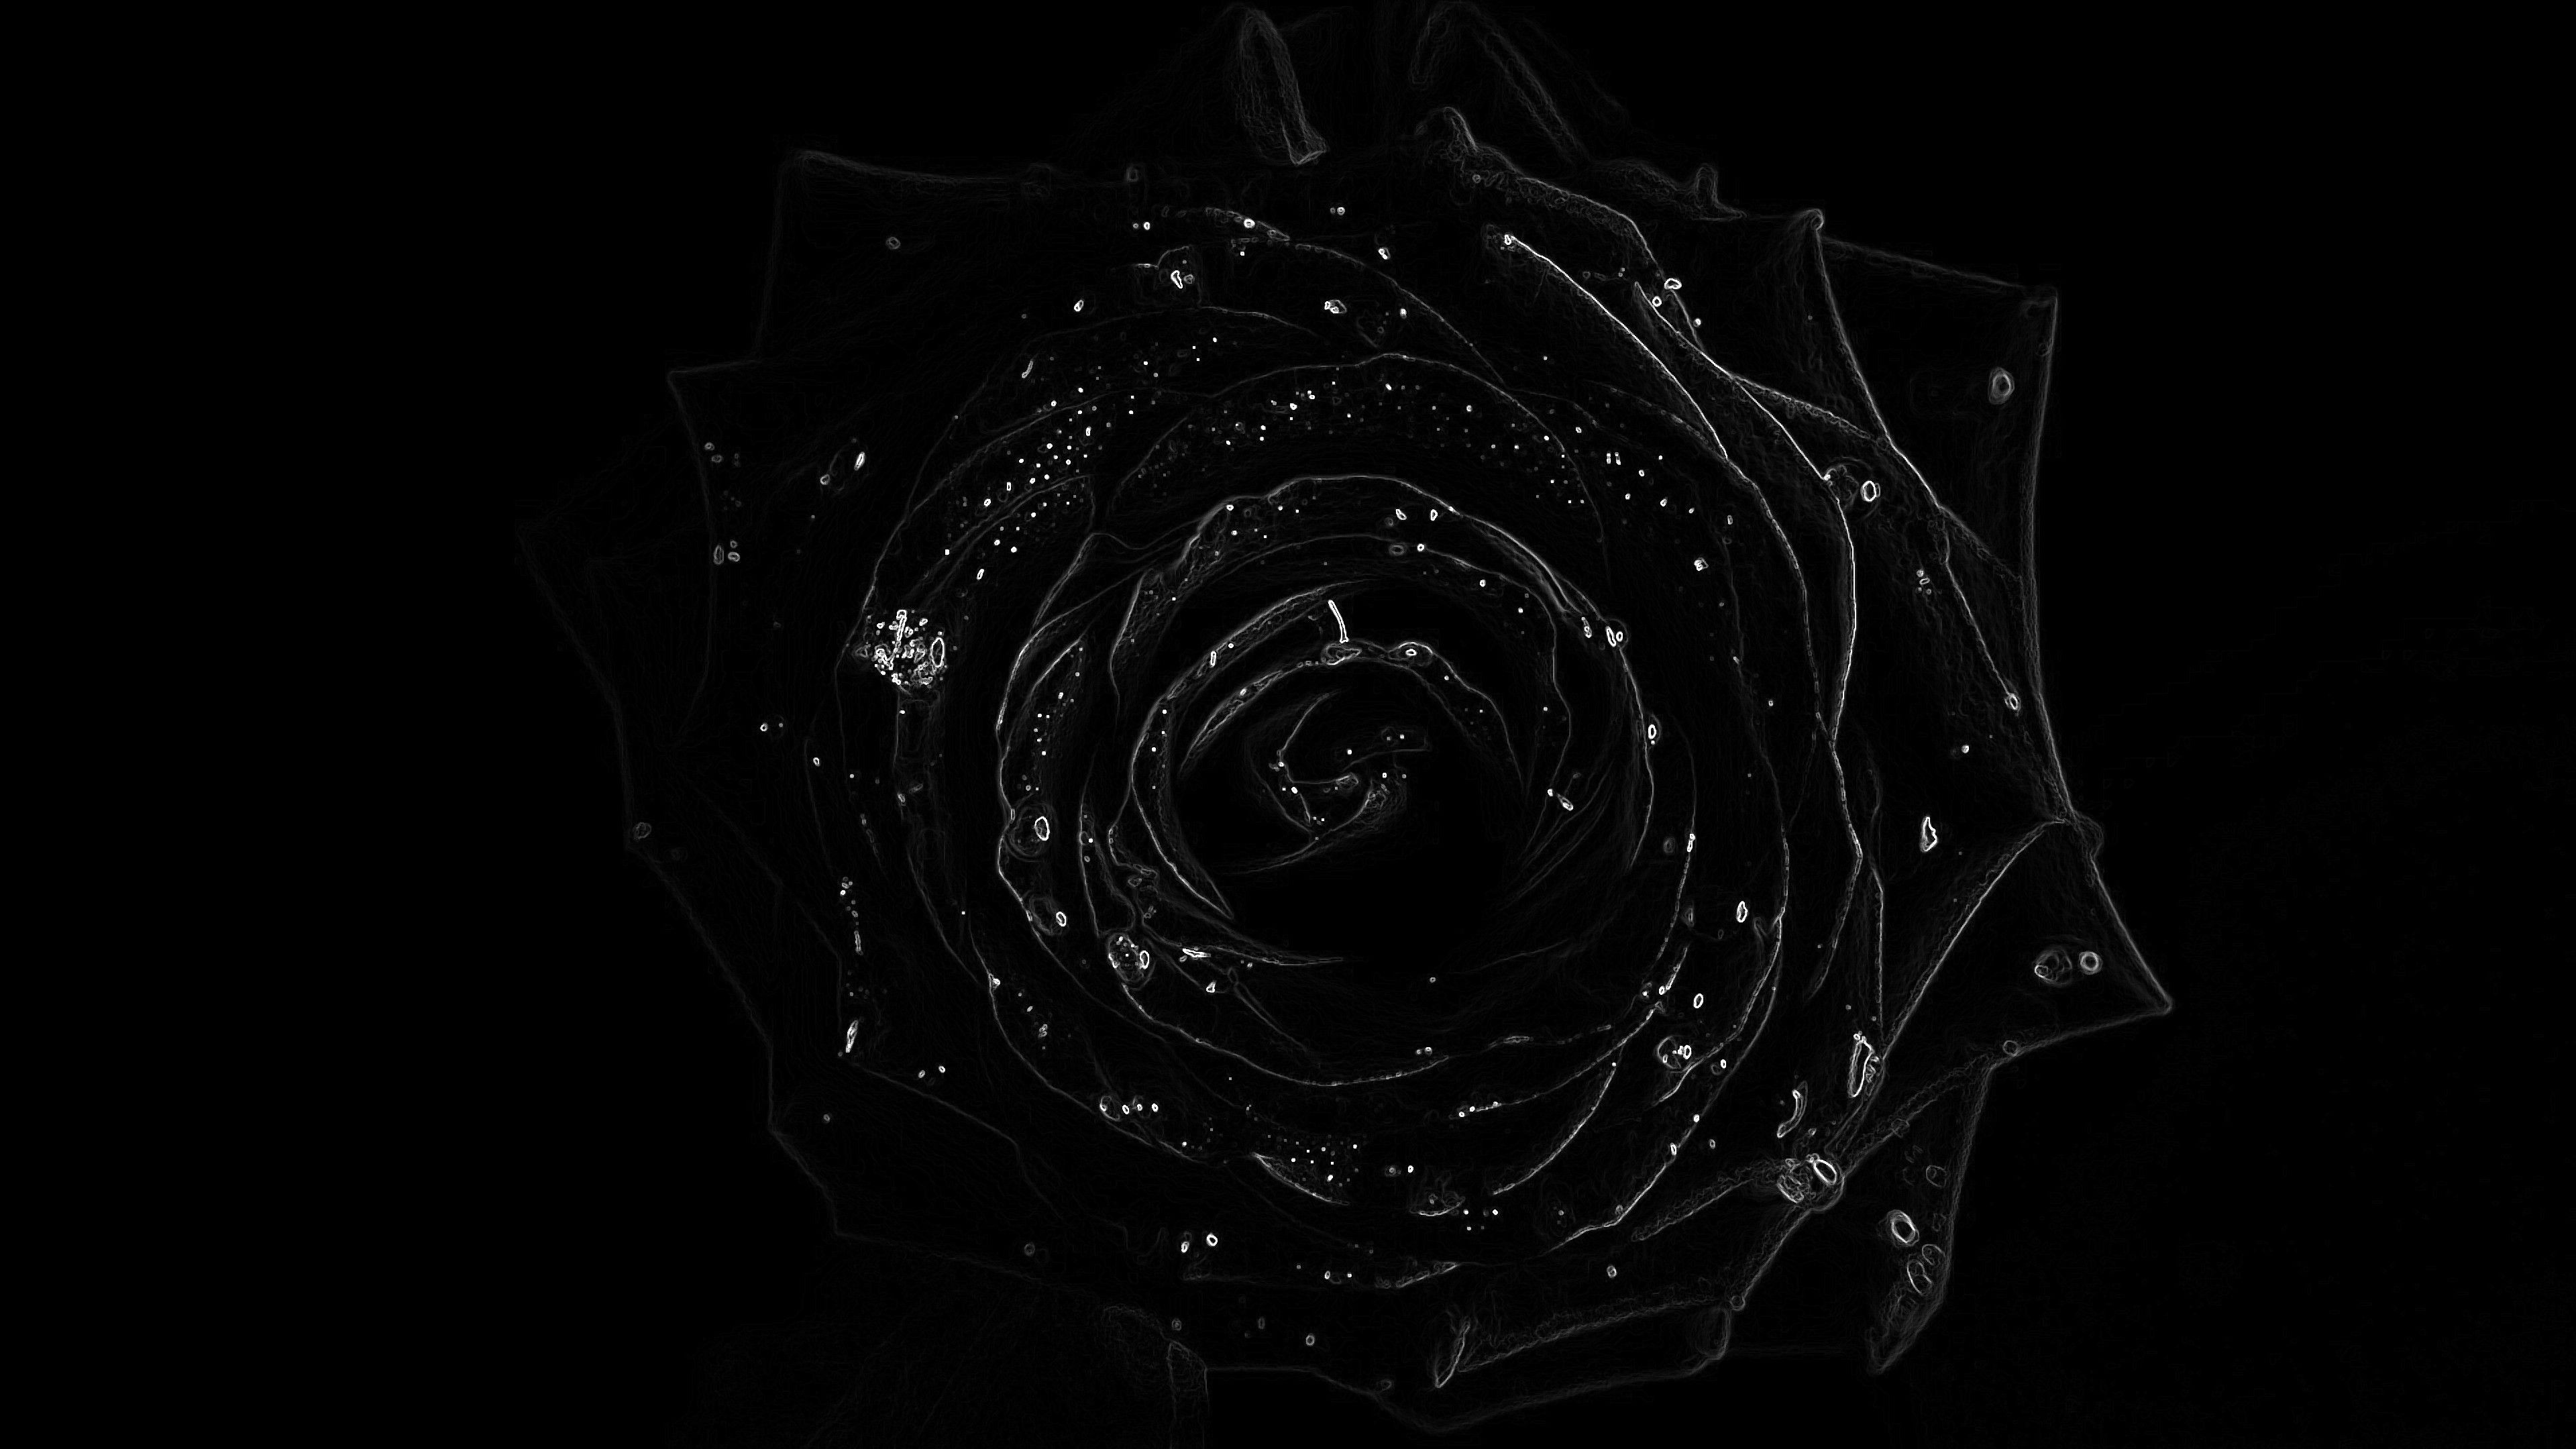 Black roses, dark luxury, gothic aesthetic, romantic symbolism, 3840x2160 4K Desktop